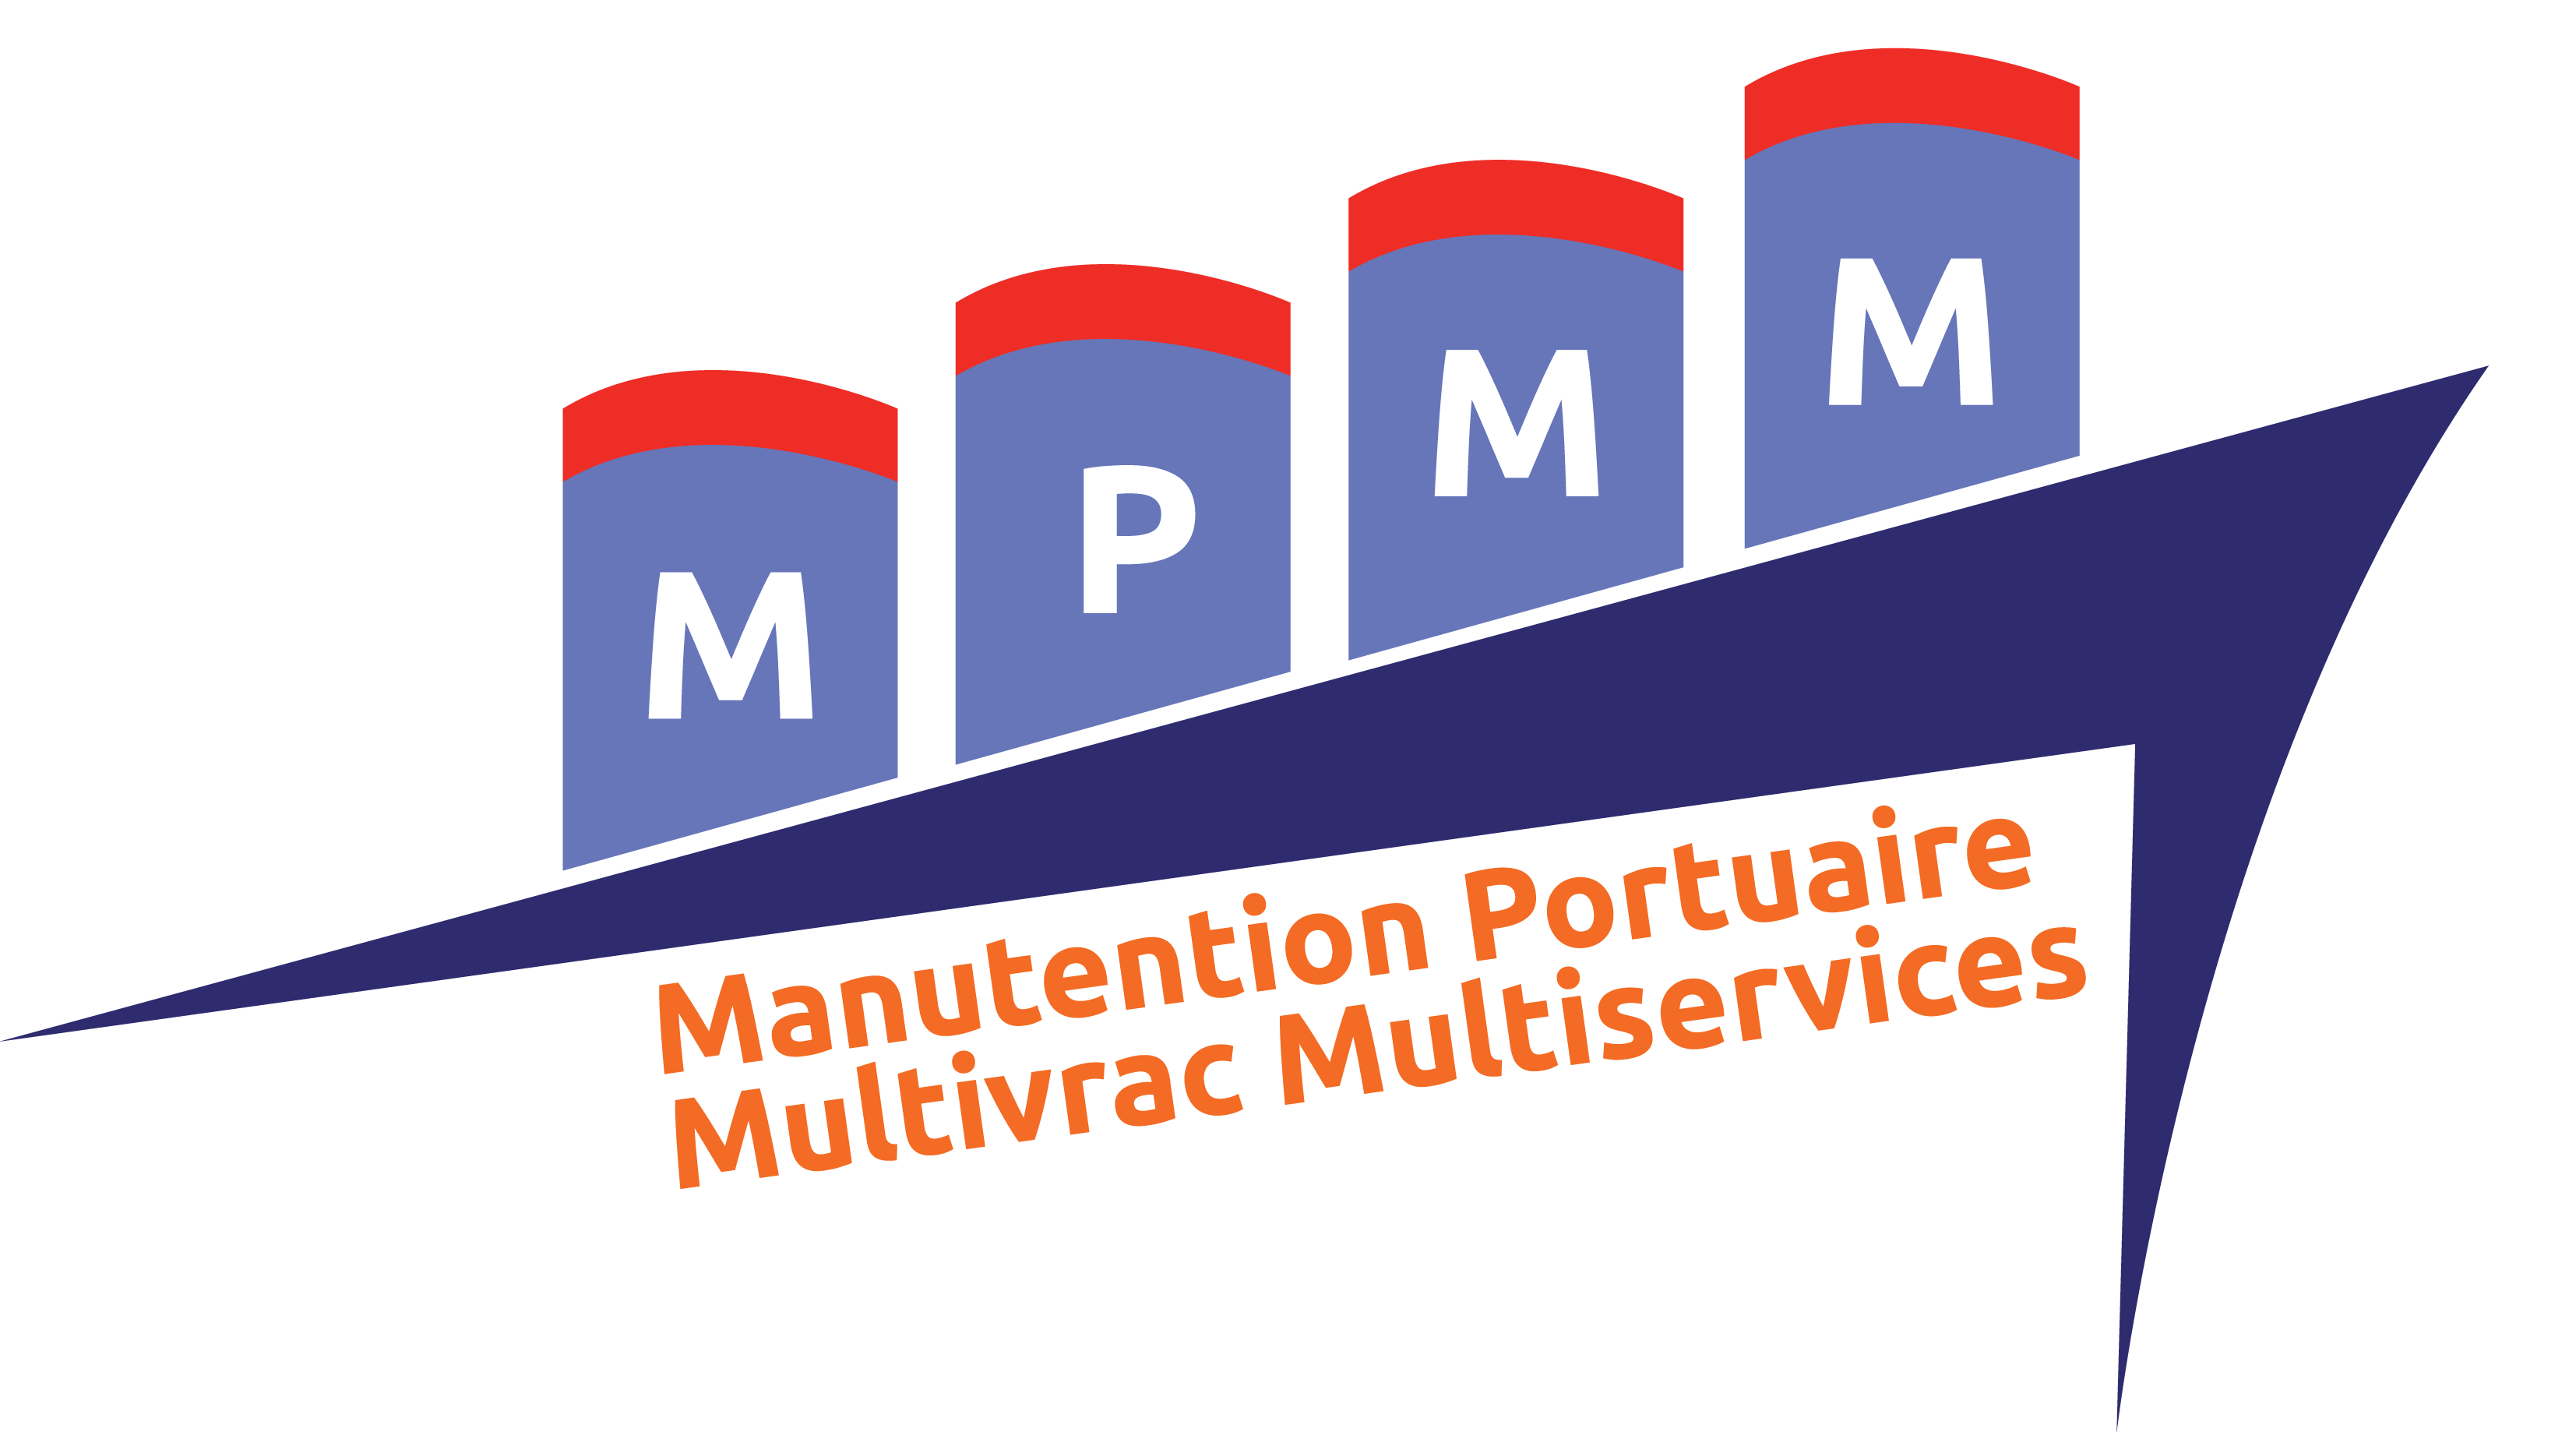 MPMM